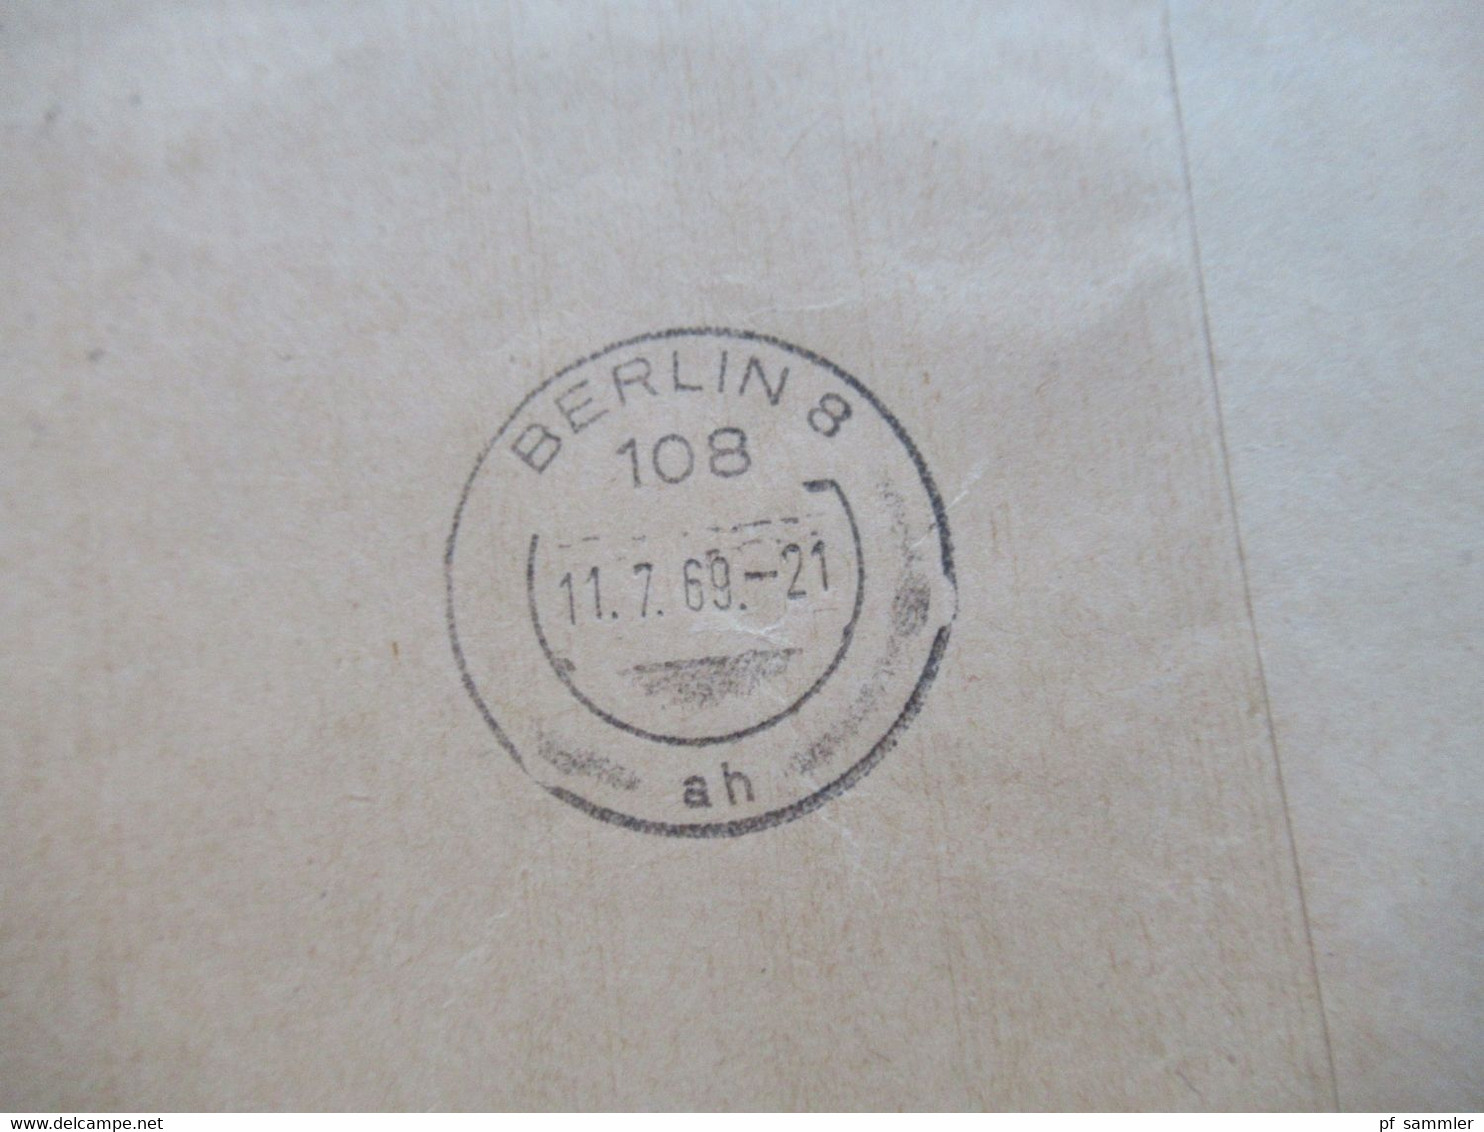 Dienst ZKD 1969 violetter AFS Ministerrat der DDR Ministerium der Finanzen ZKD Umschlag umgehend zurück an Poststelle